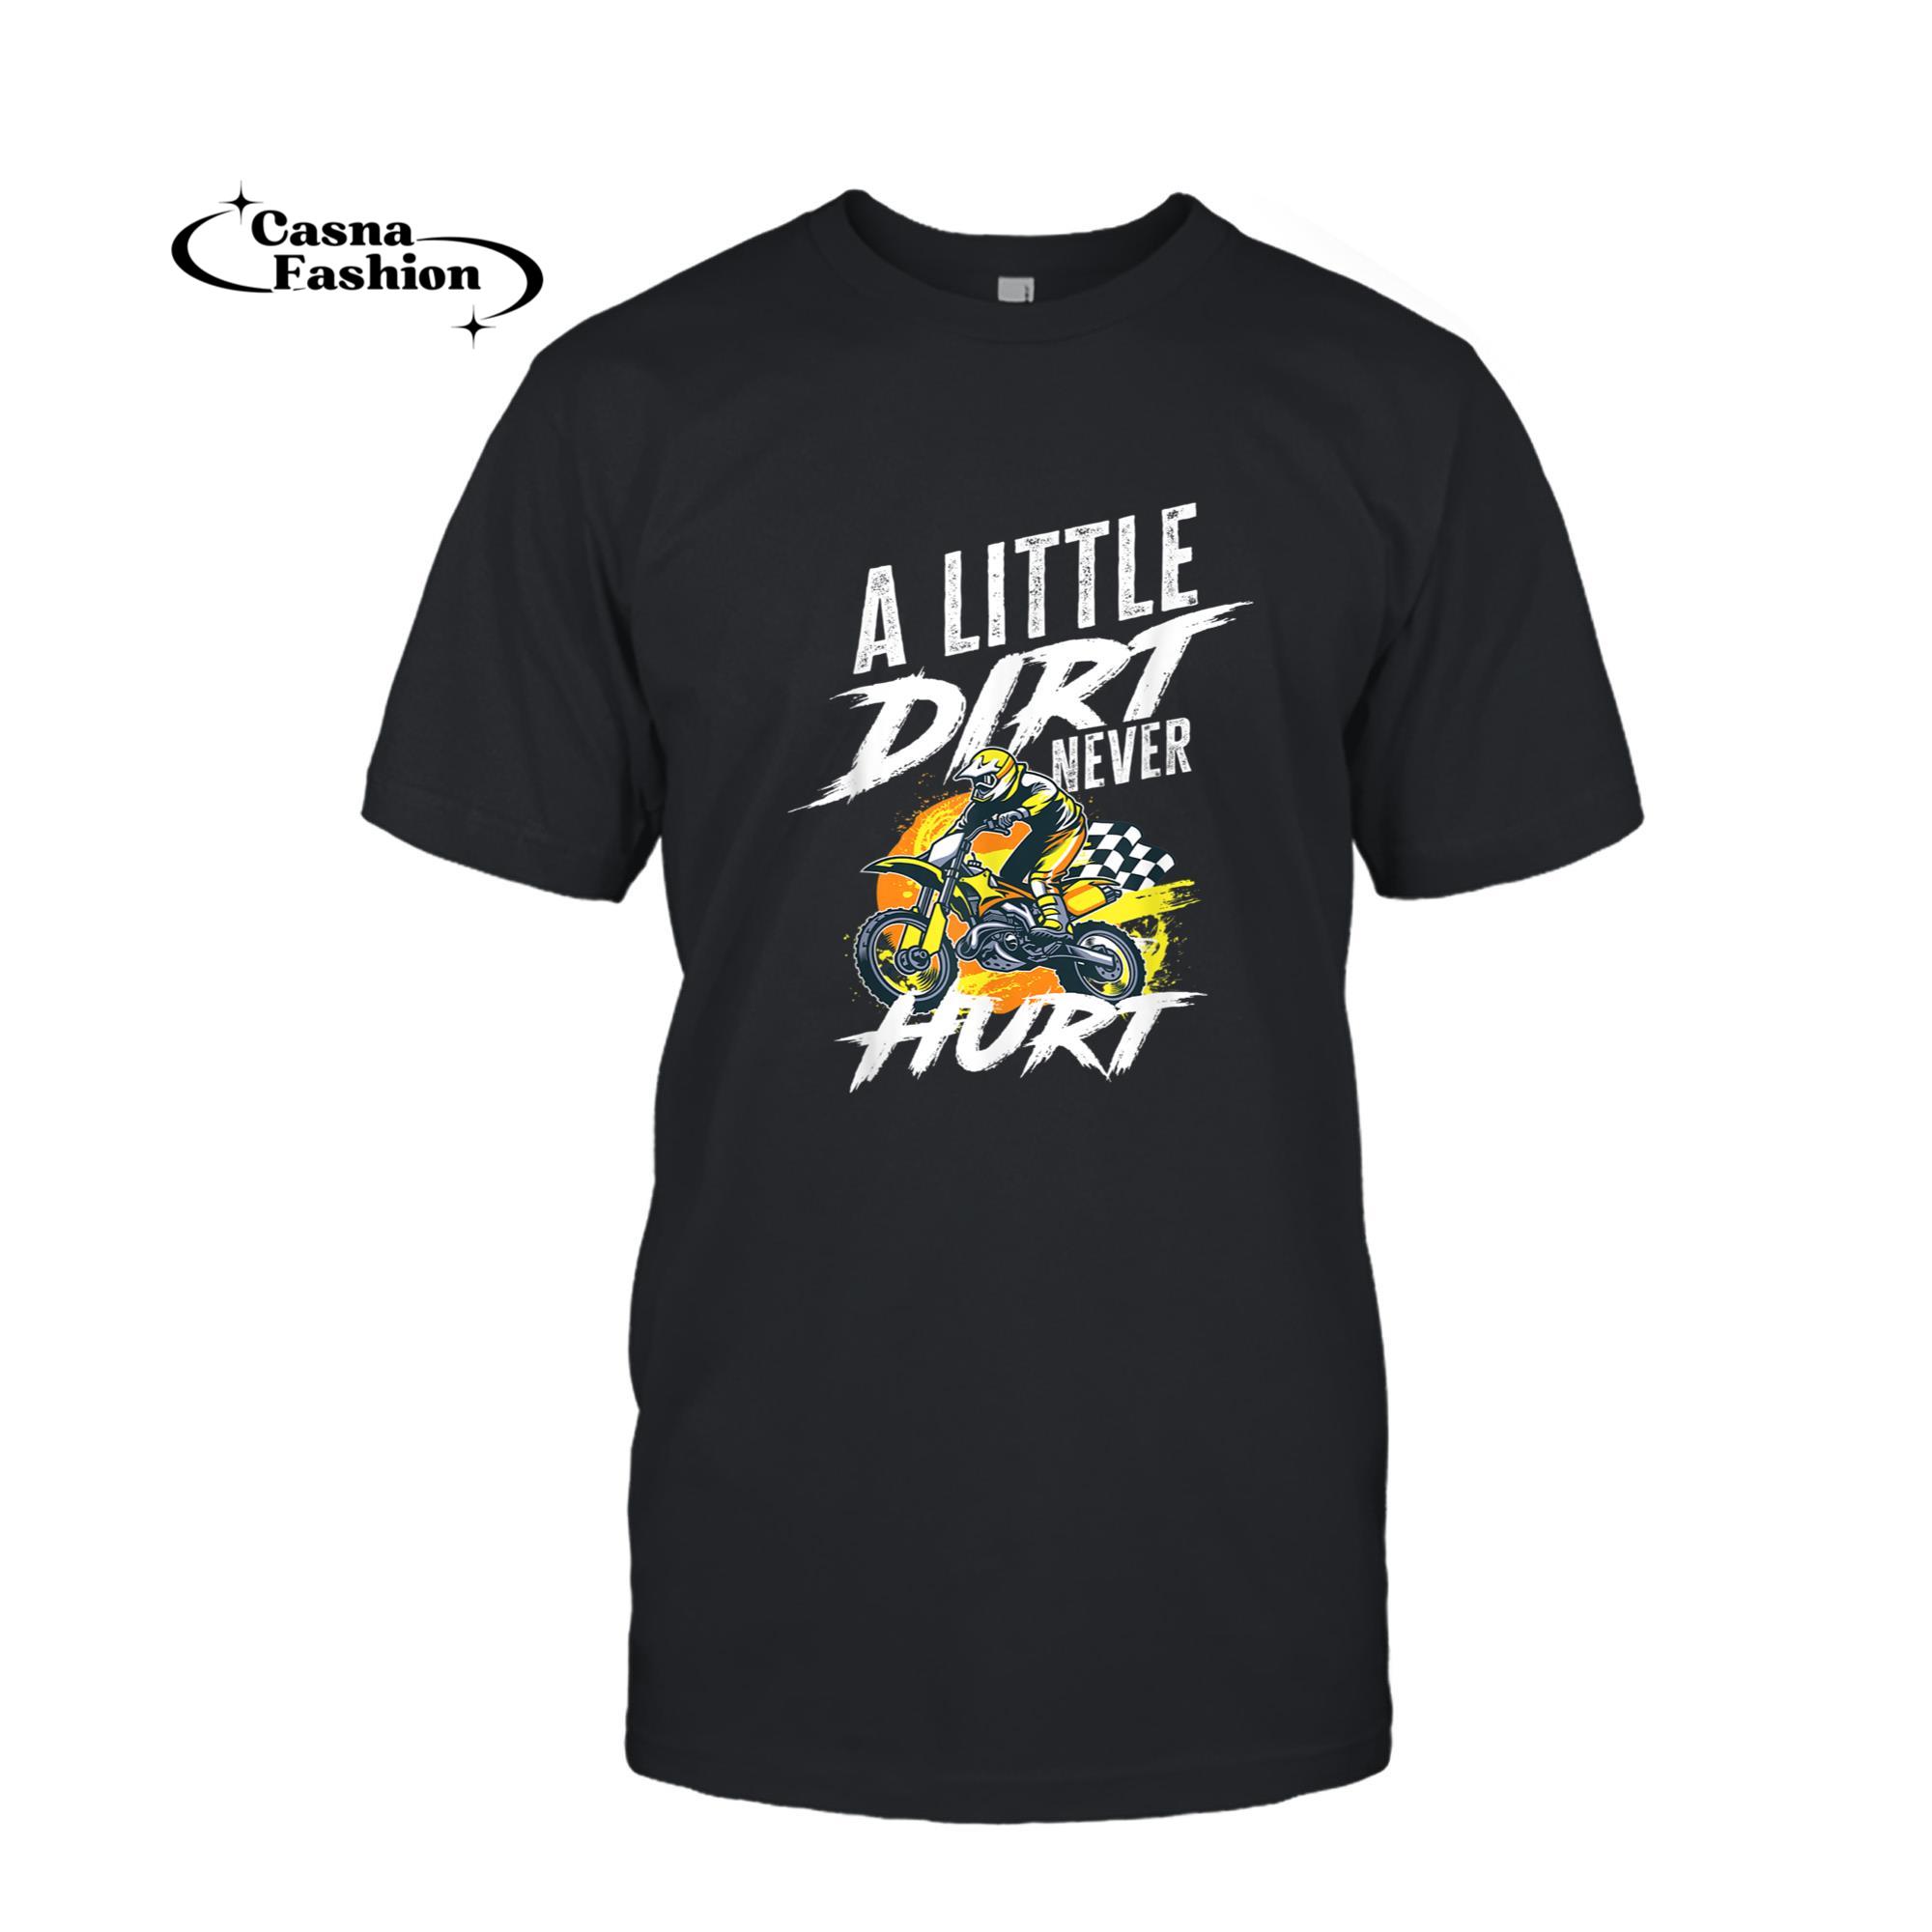 casnafashion_T-shirt_A Little Dirt Never Hurt - Boys Girls Motocross Gift T-Shirt_T-shirt_Black